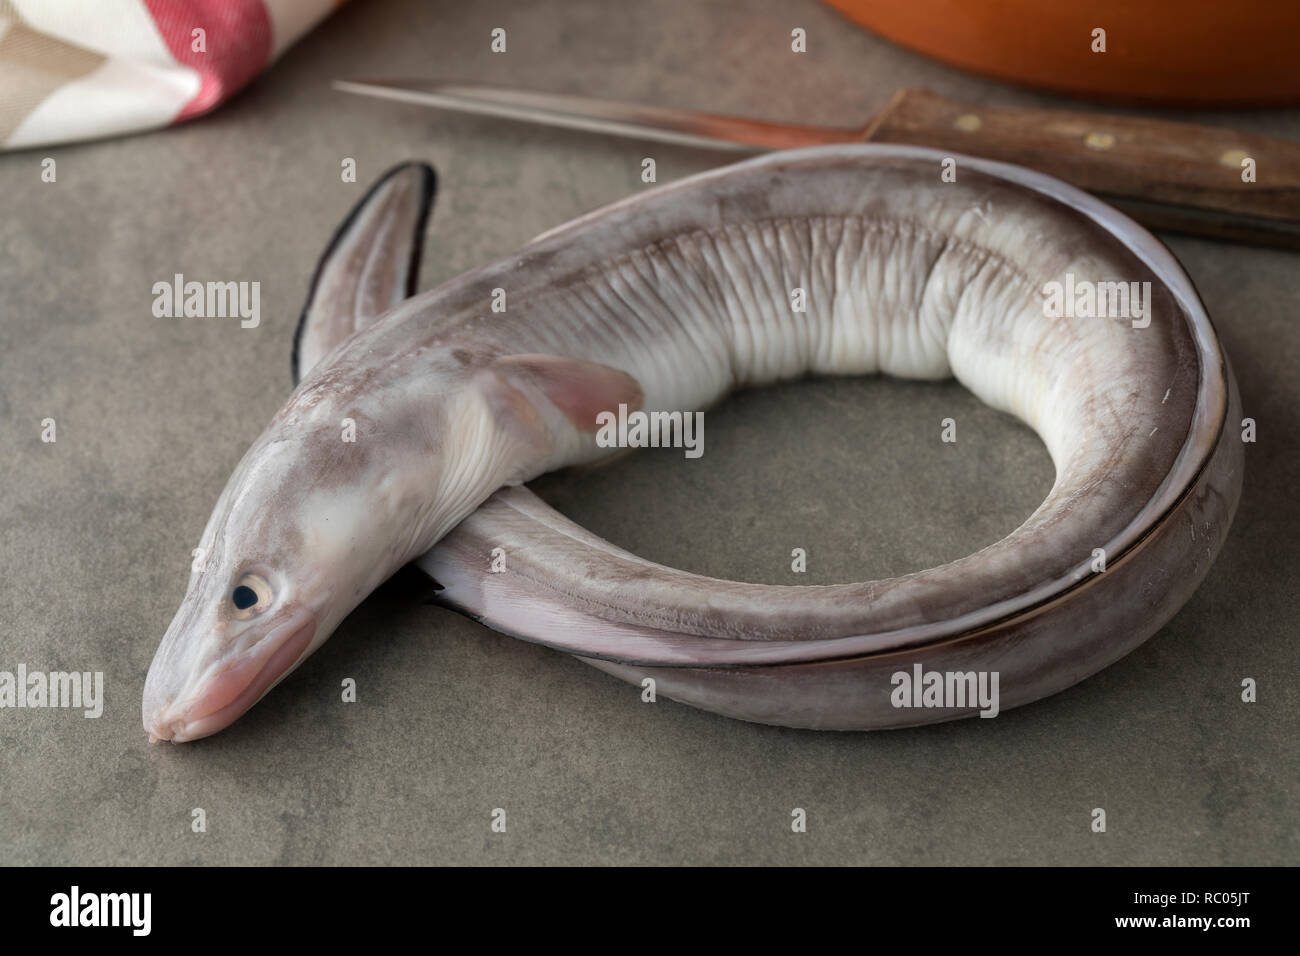 Single fresh raw european conger eel for dinner Stock Photo